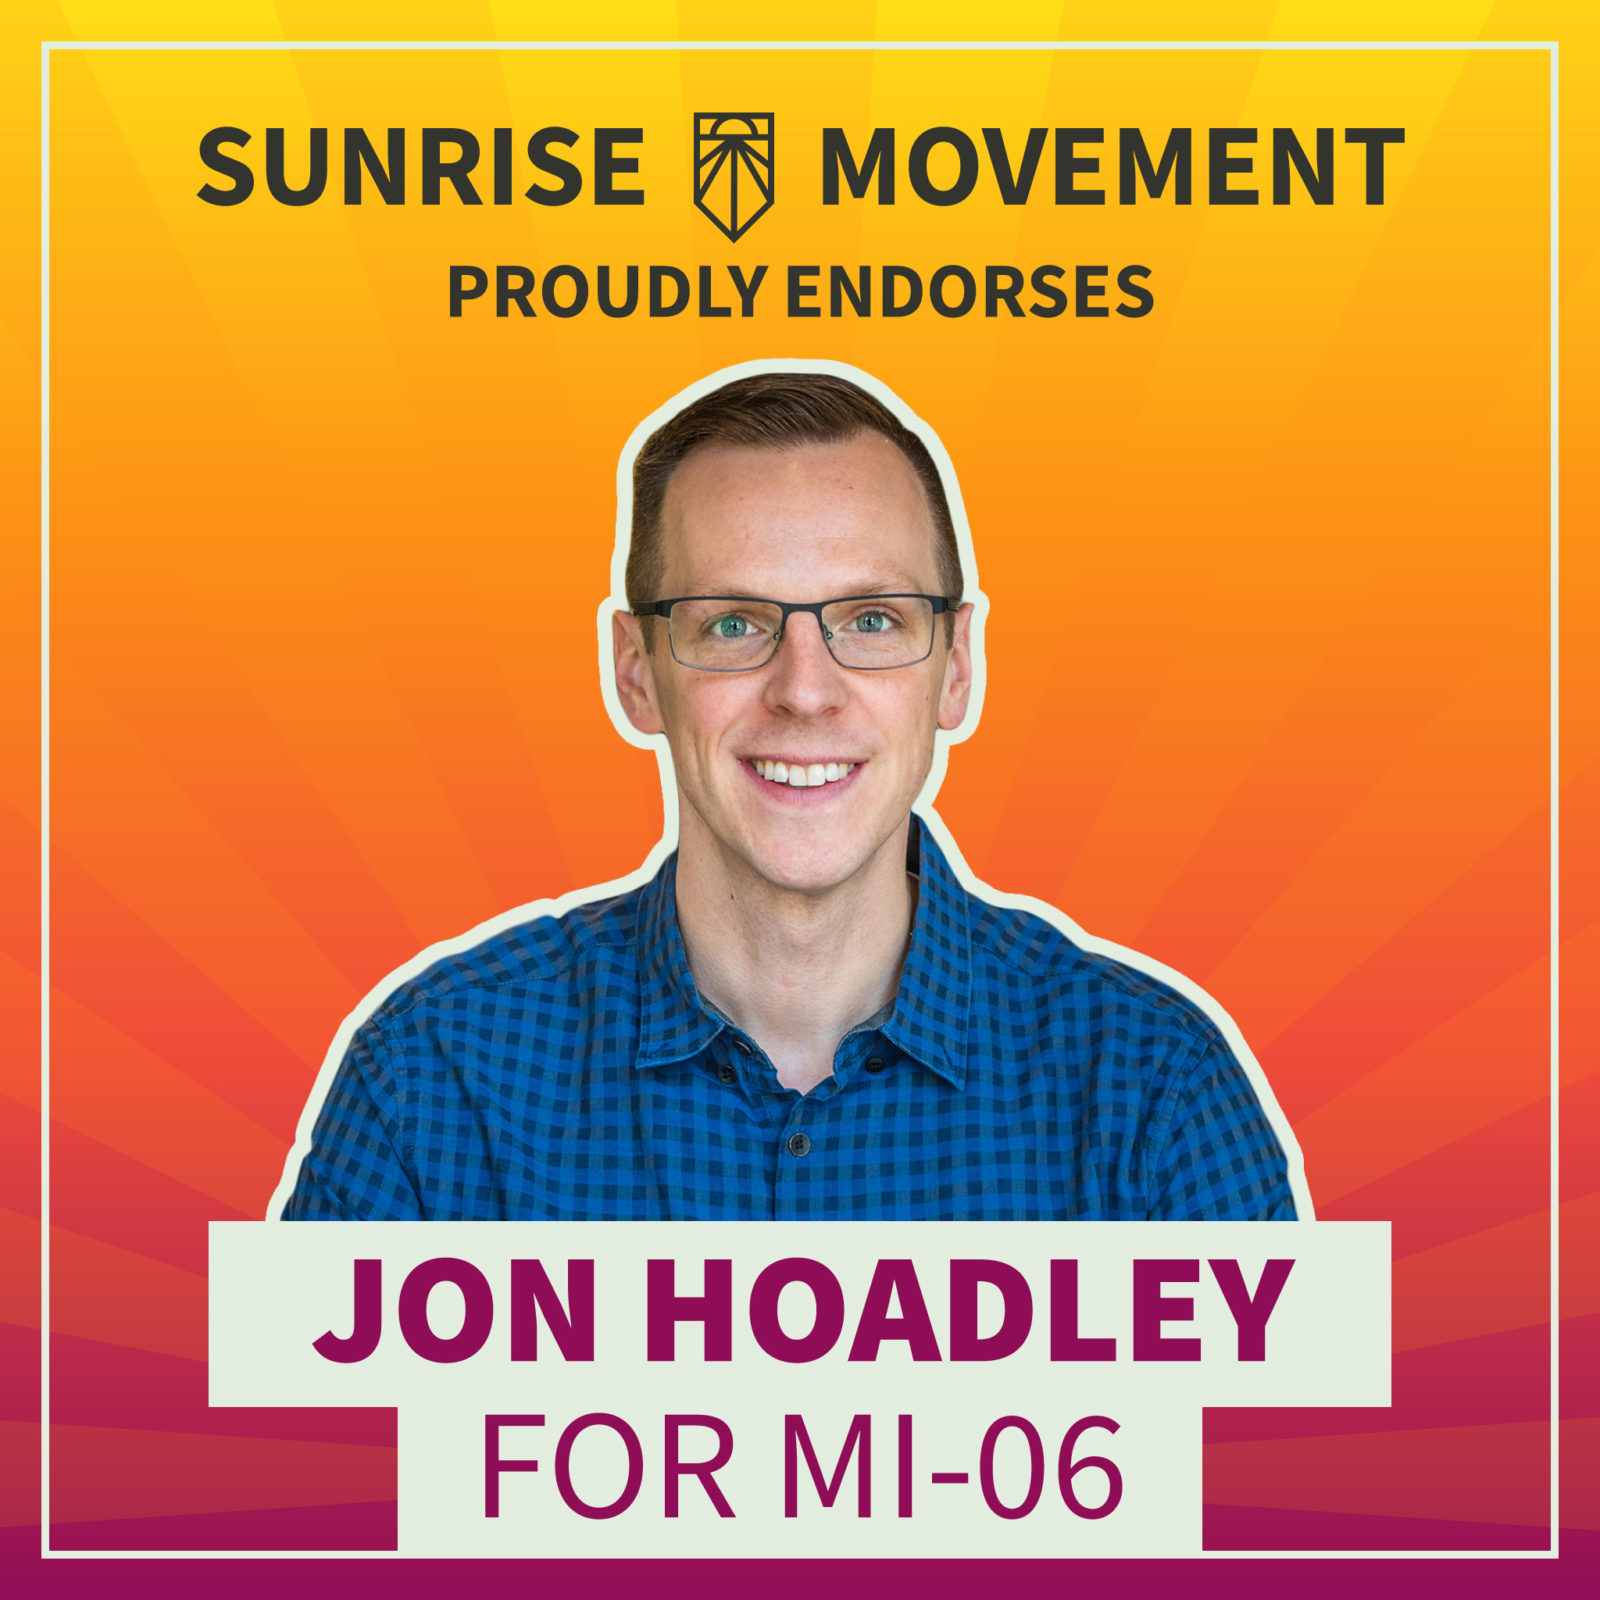 Een foto van Jon Hoadley met tekst: Sunrise Movement onderschrijft met trots Jon Hoadley voor MI-06.